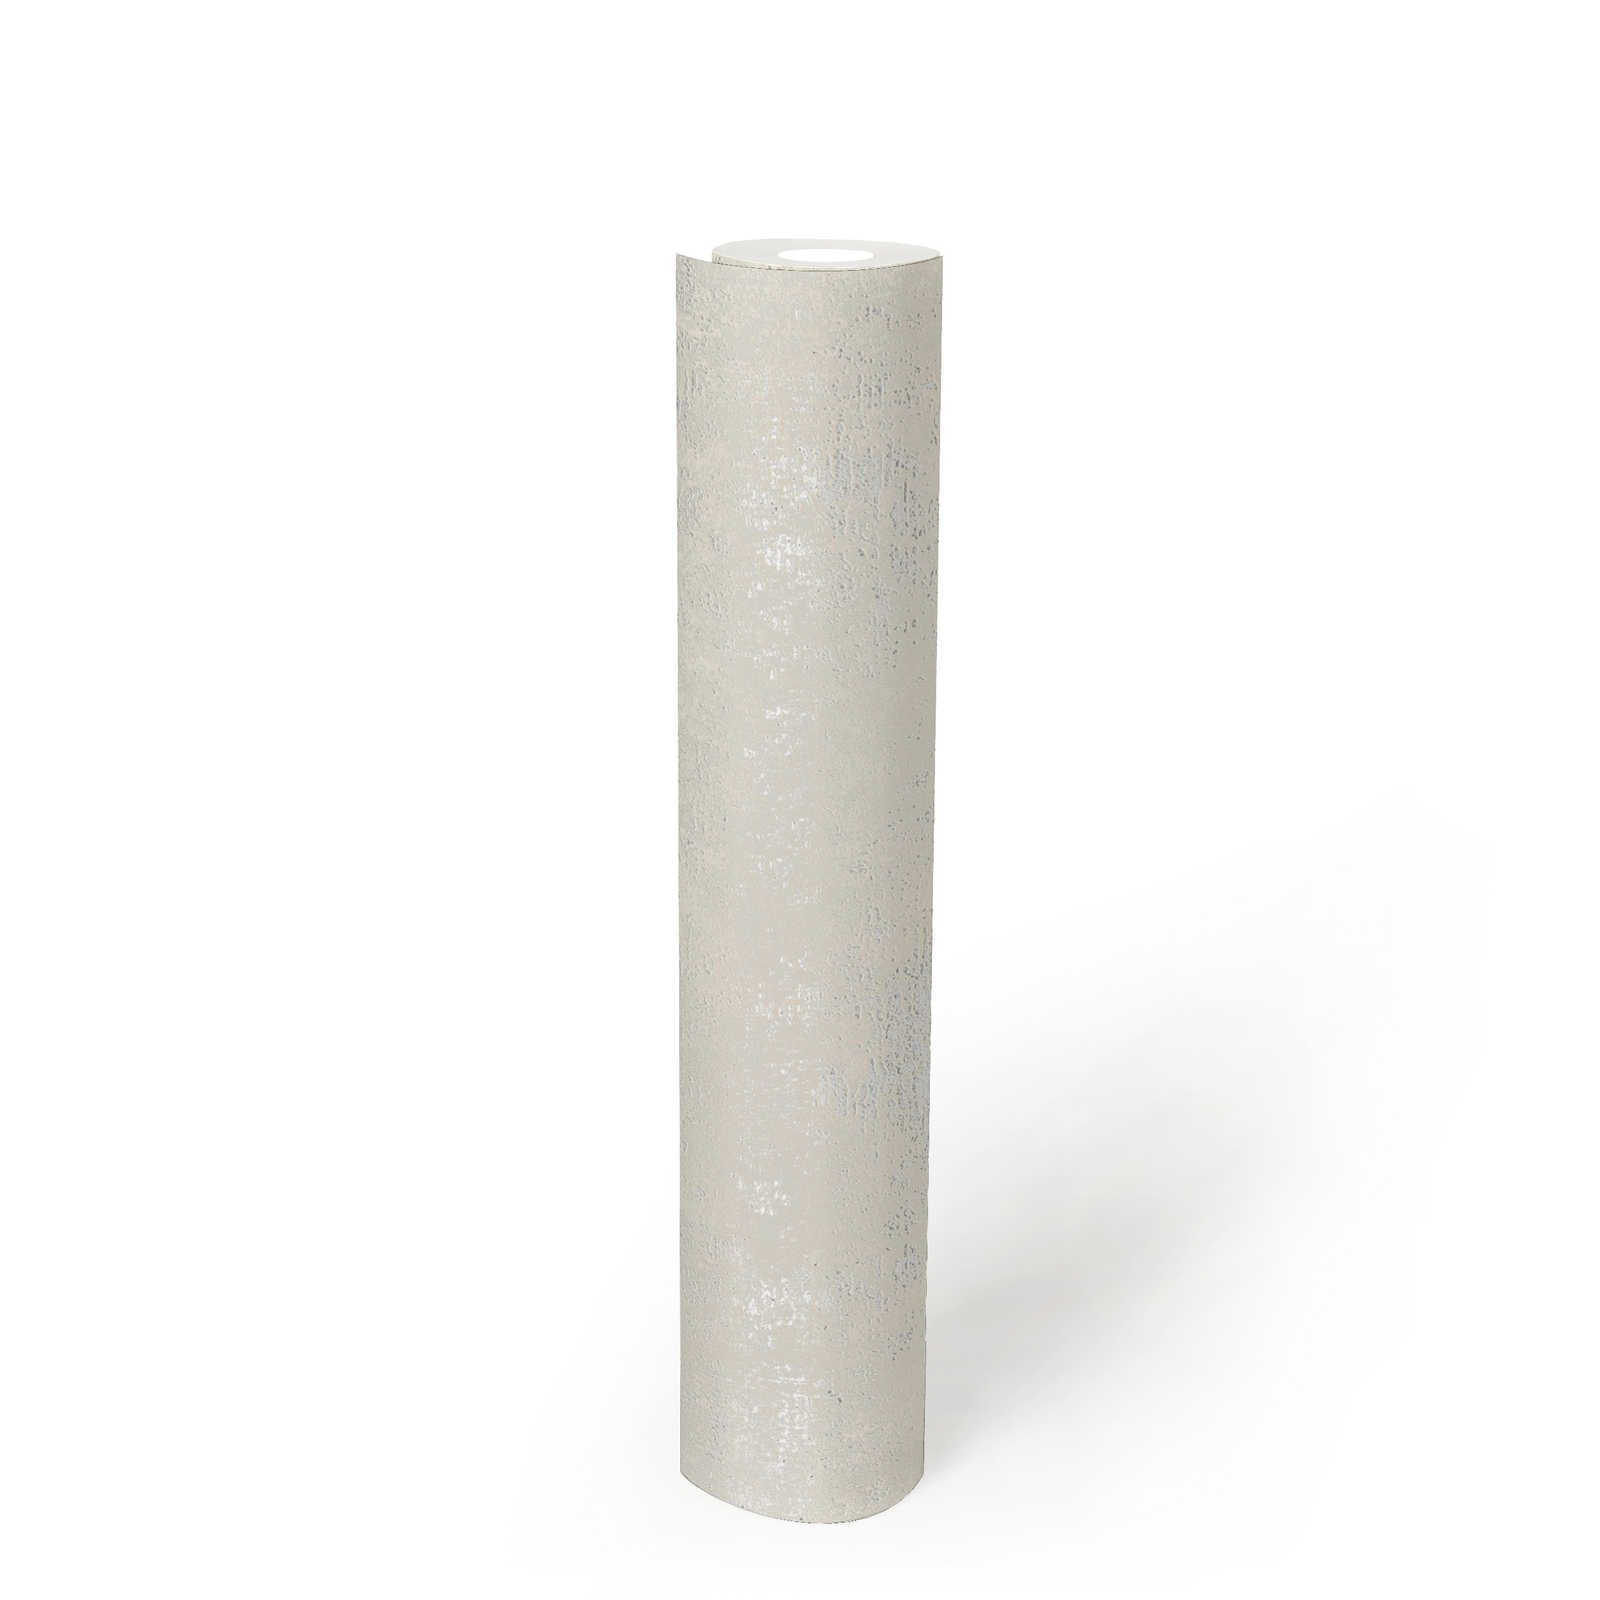             Papel pintado blanco crema con diseño de estructura - crema, metálico
        